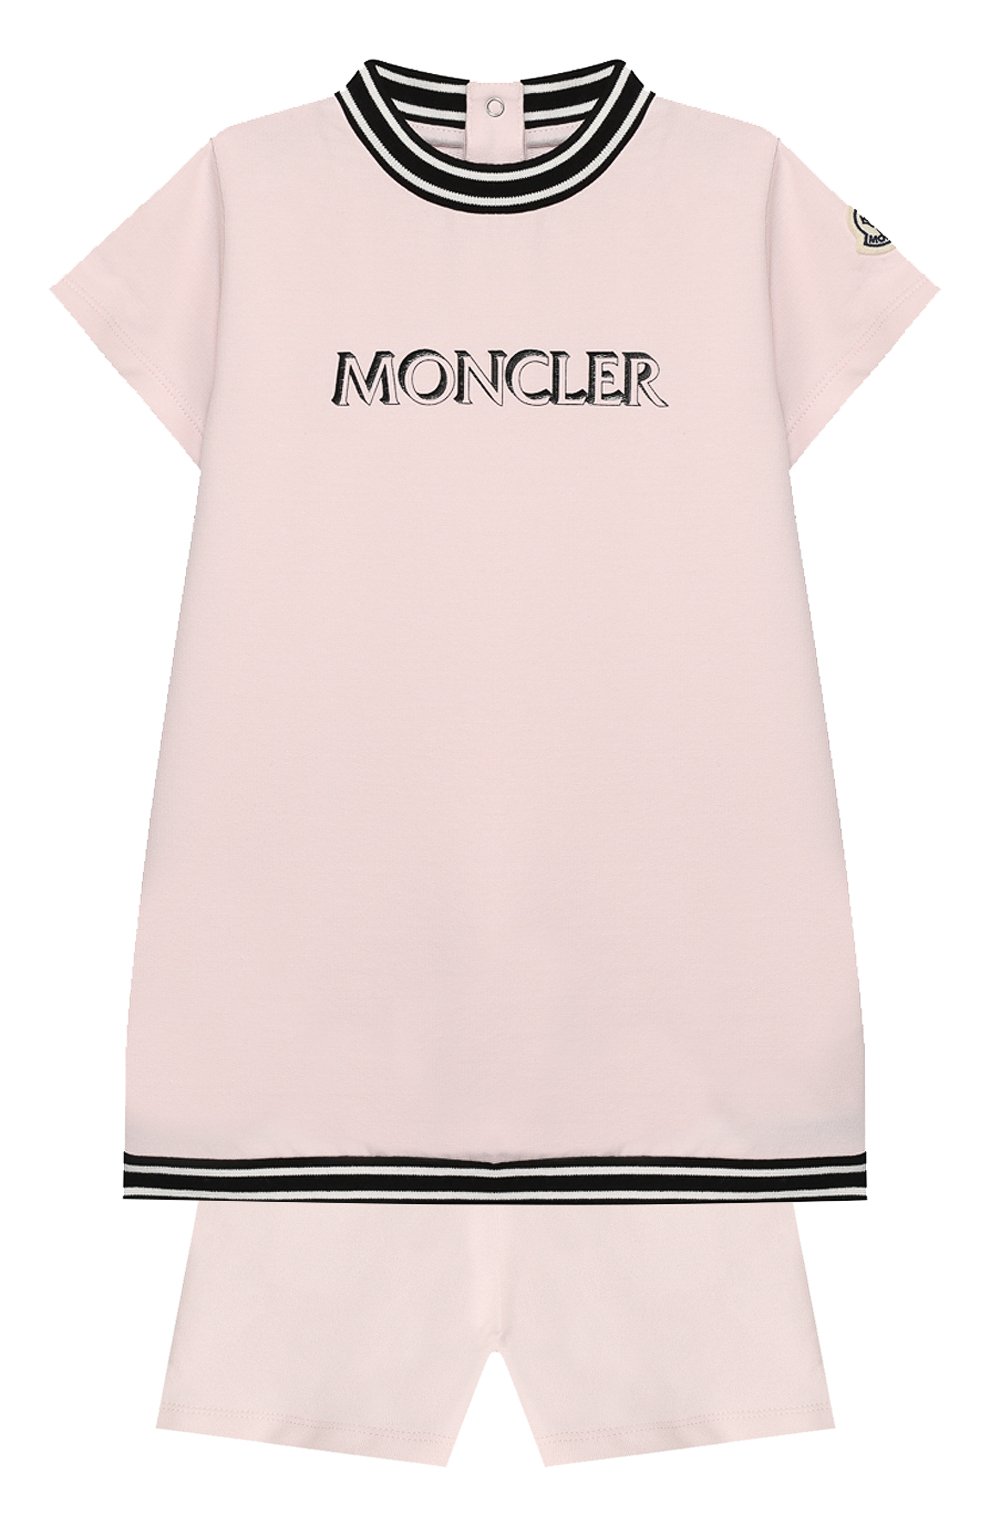 Женский комплект из футболки и шорт MONCLER розового цвета, арт. F1-951-8M711-10-809DQ | Фото 1